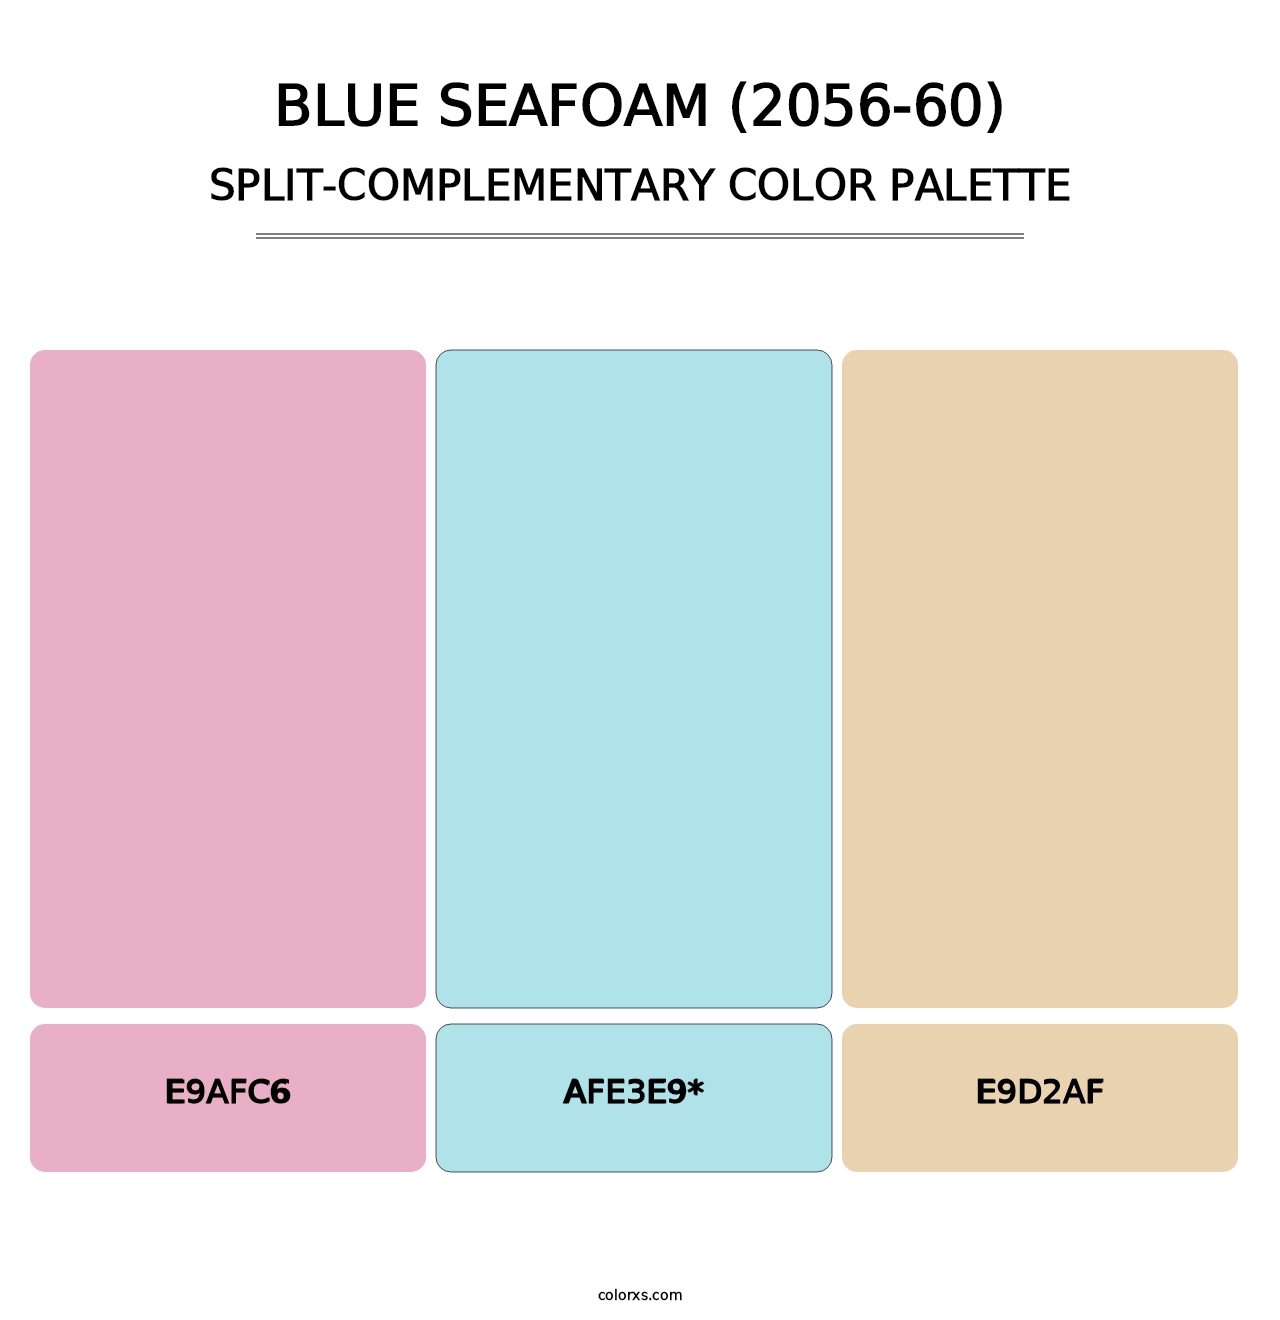 Blue Seafoam (2056-60) - Split-Complementary Color Palette